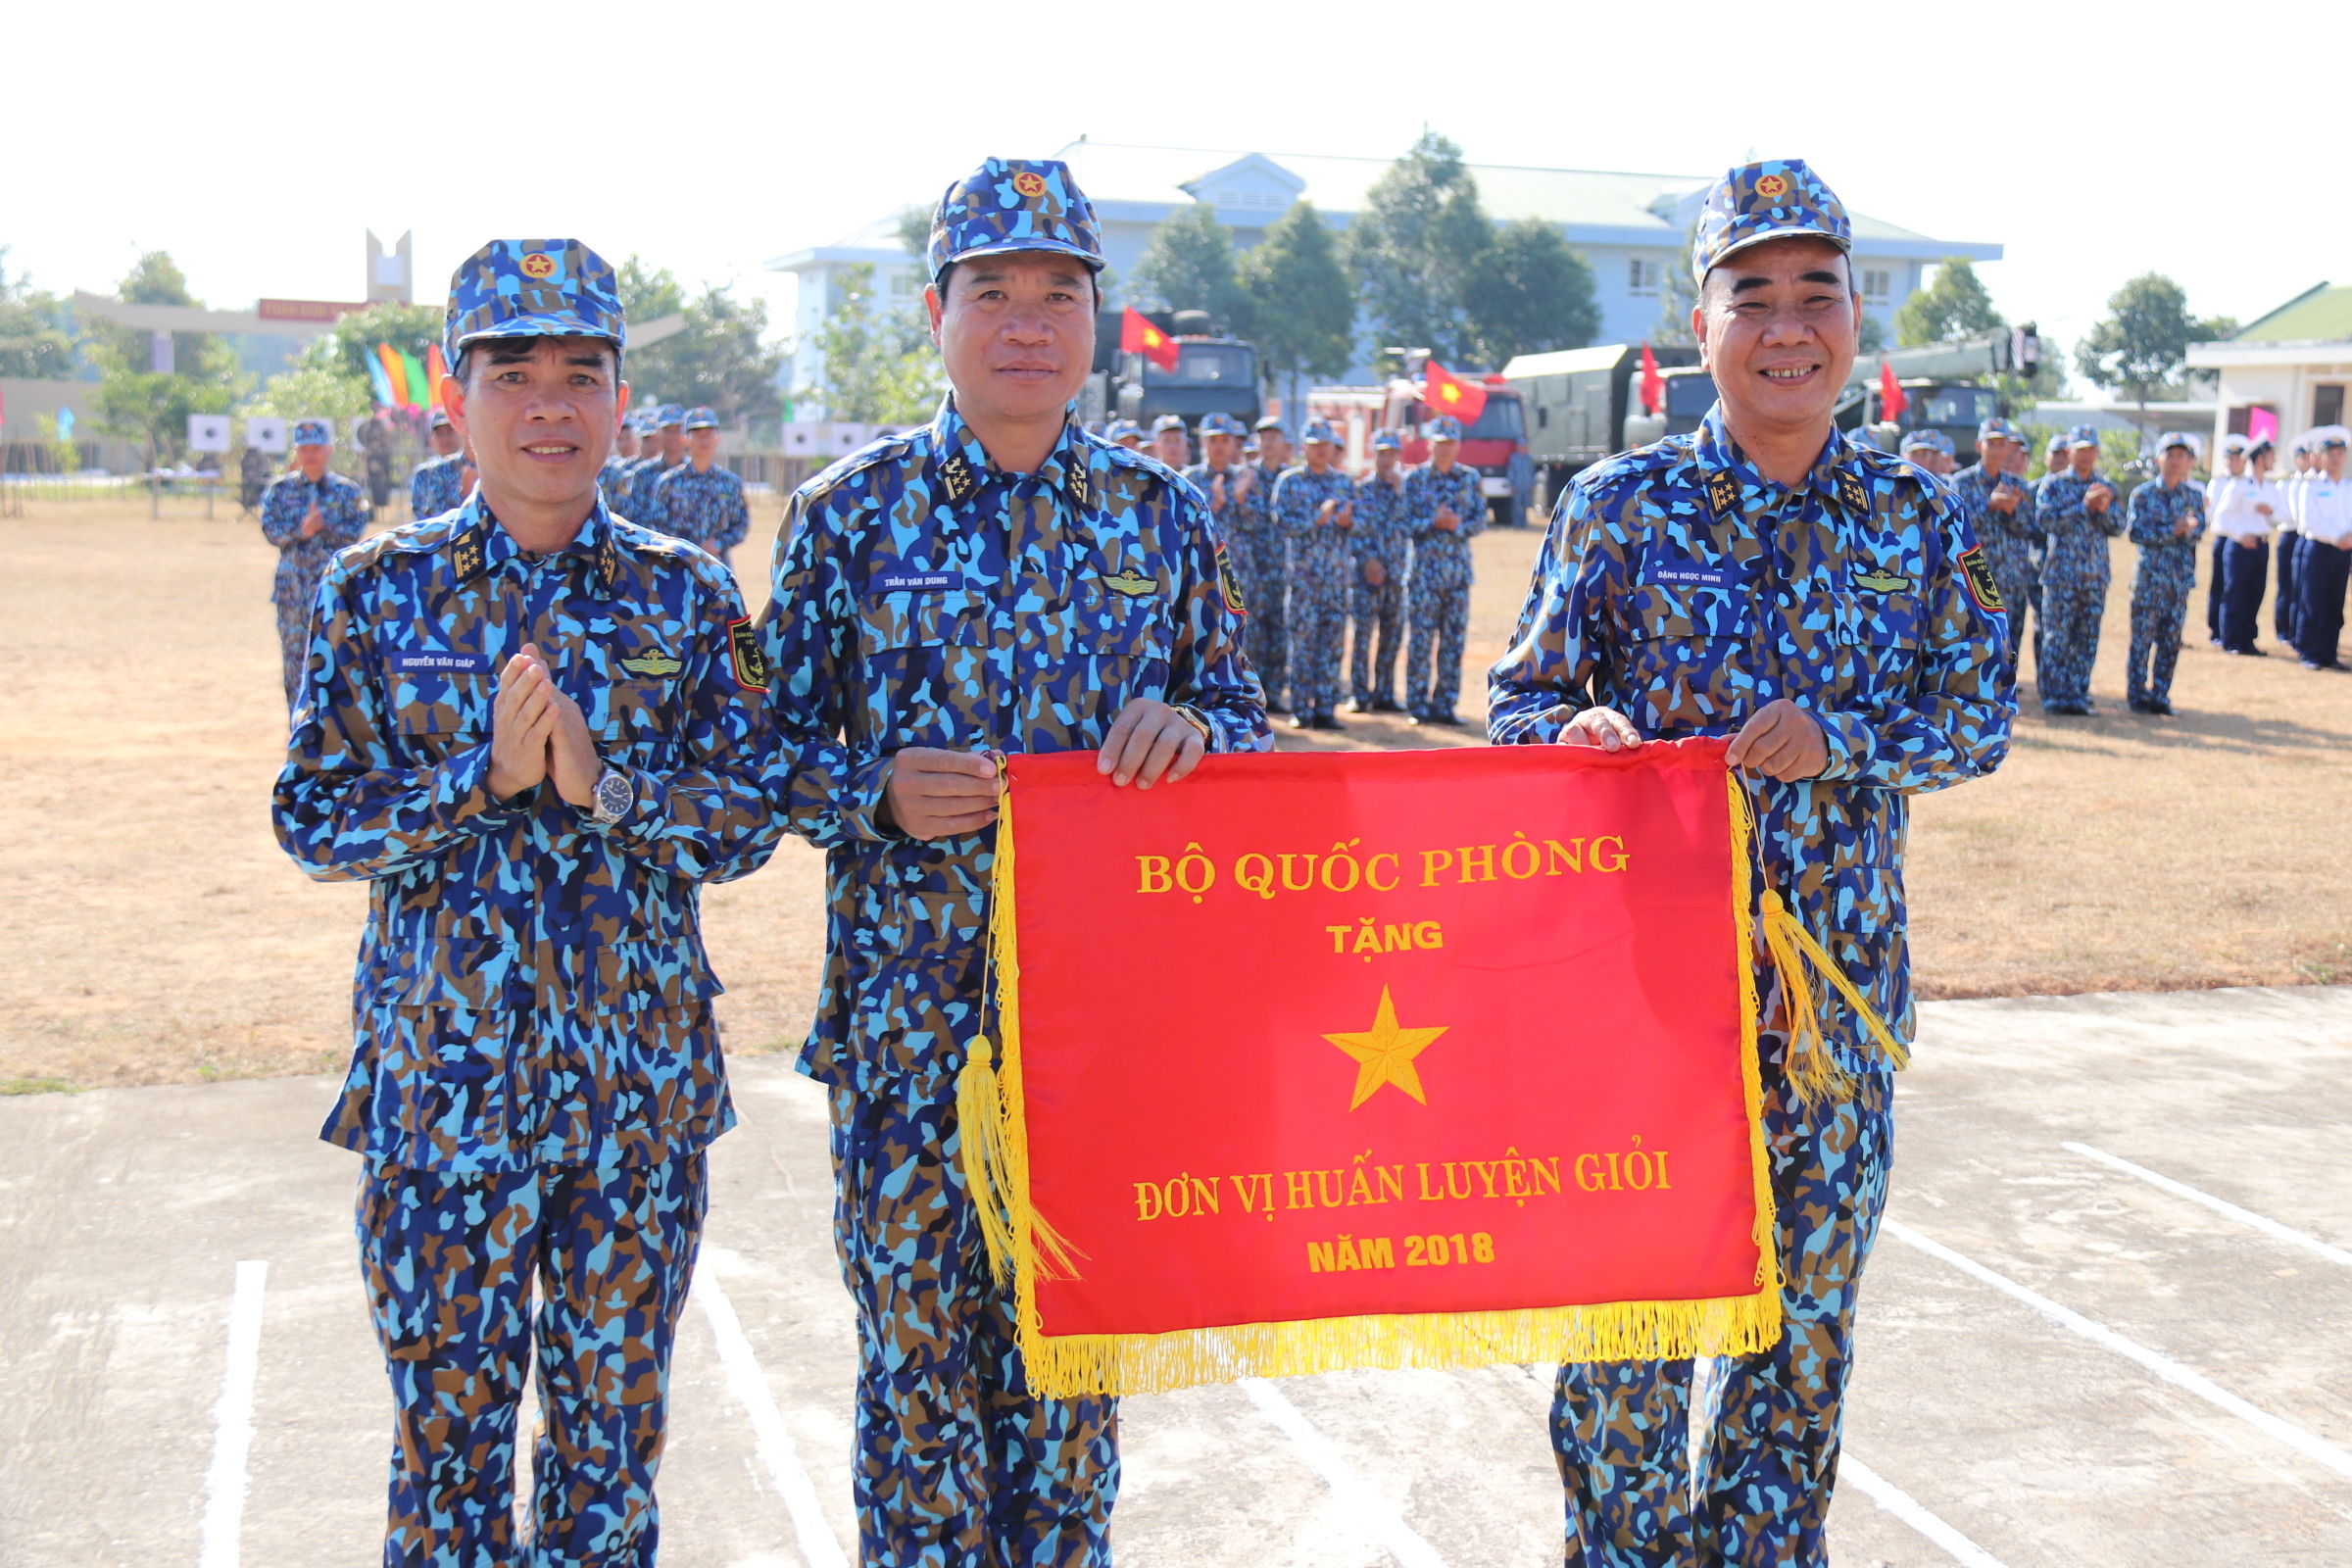 Đại tá Đỗ Tấn Hồng (trái) thay mặt Bộ Tư lệnh hải quân tặng cờ thi đua của Bộ Quốc phòng cho Lữ đoàn 681 Hải quân